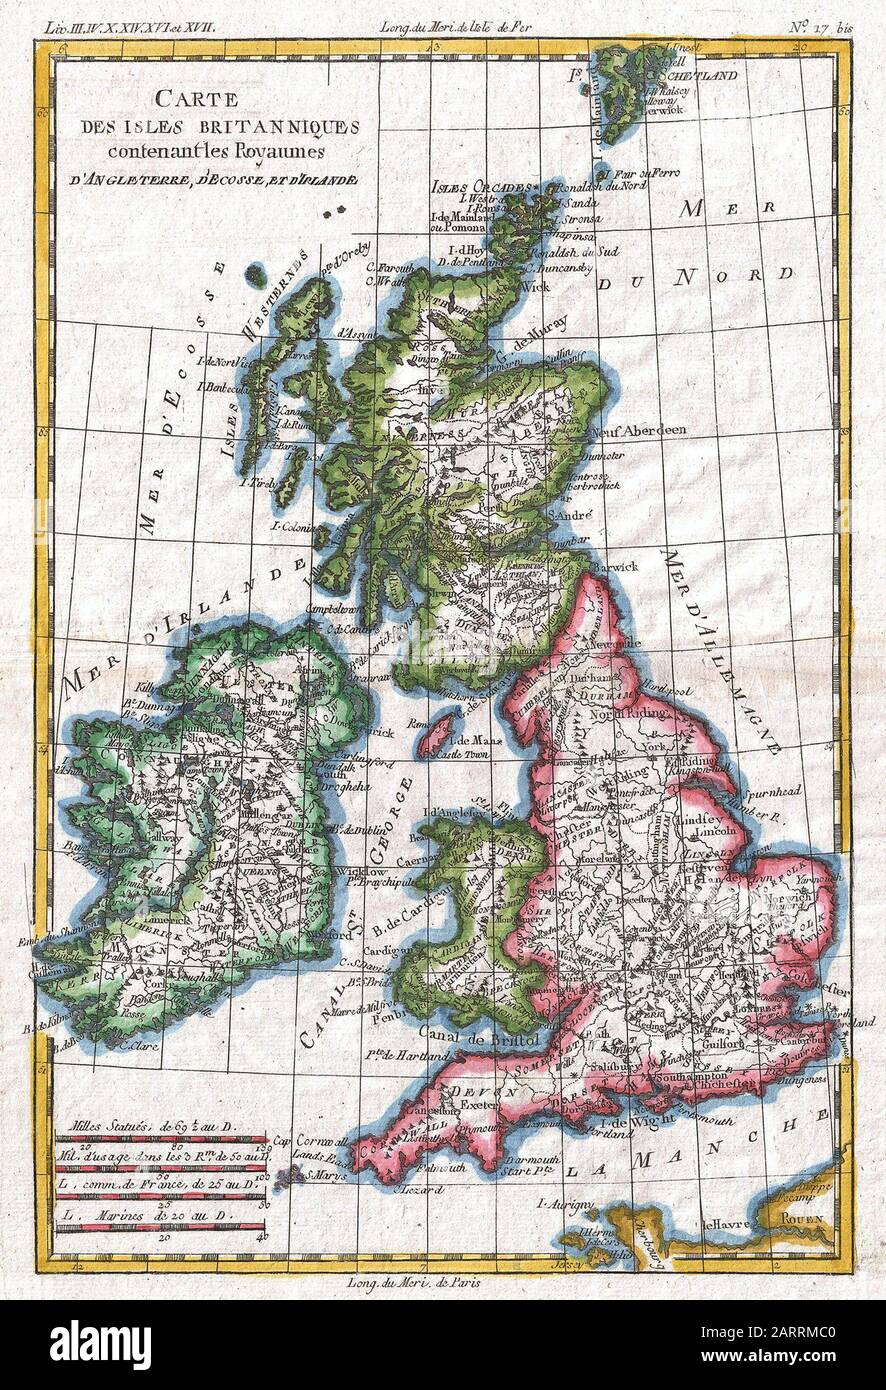 Raynal et bonne carte des îles britanniques, 1790 Banque D'Images